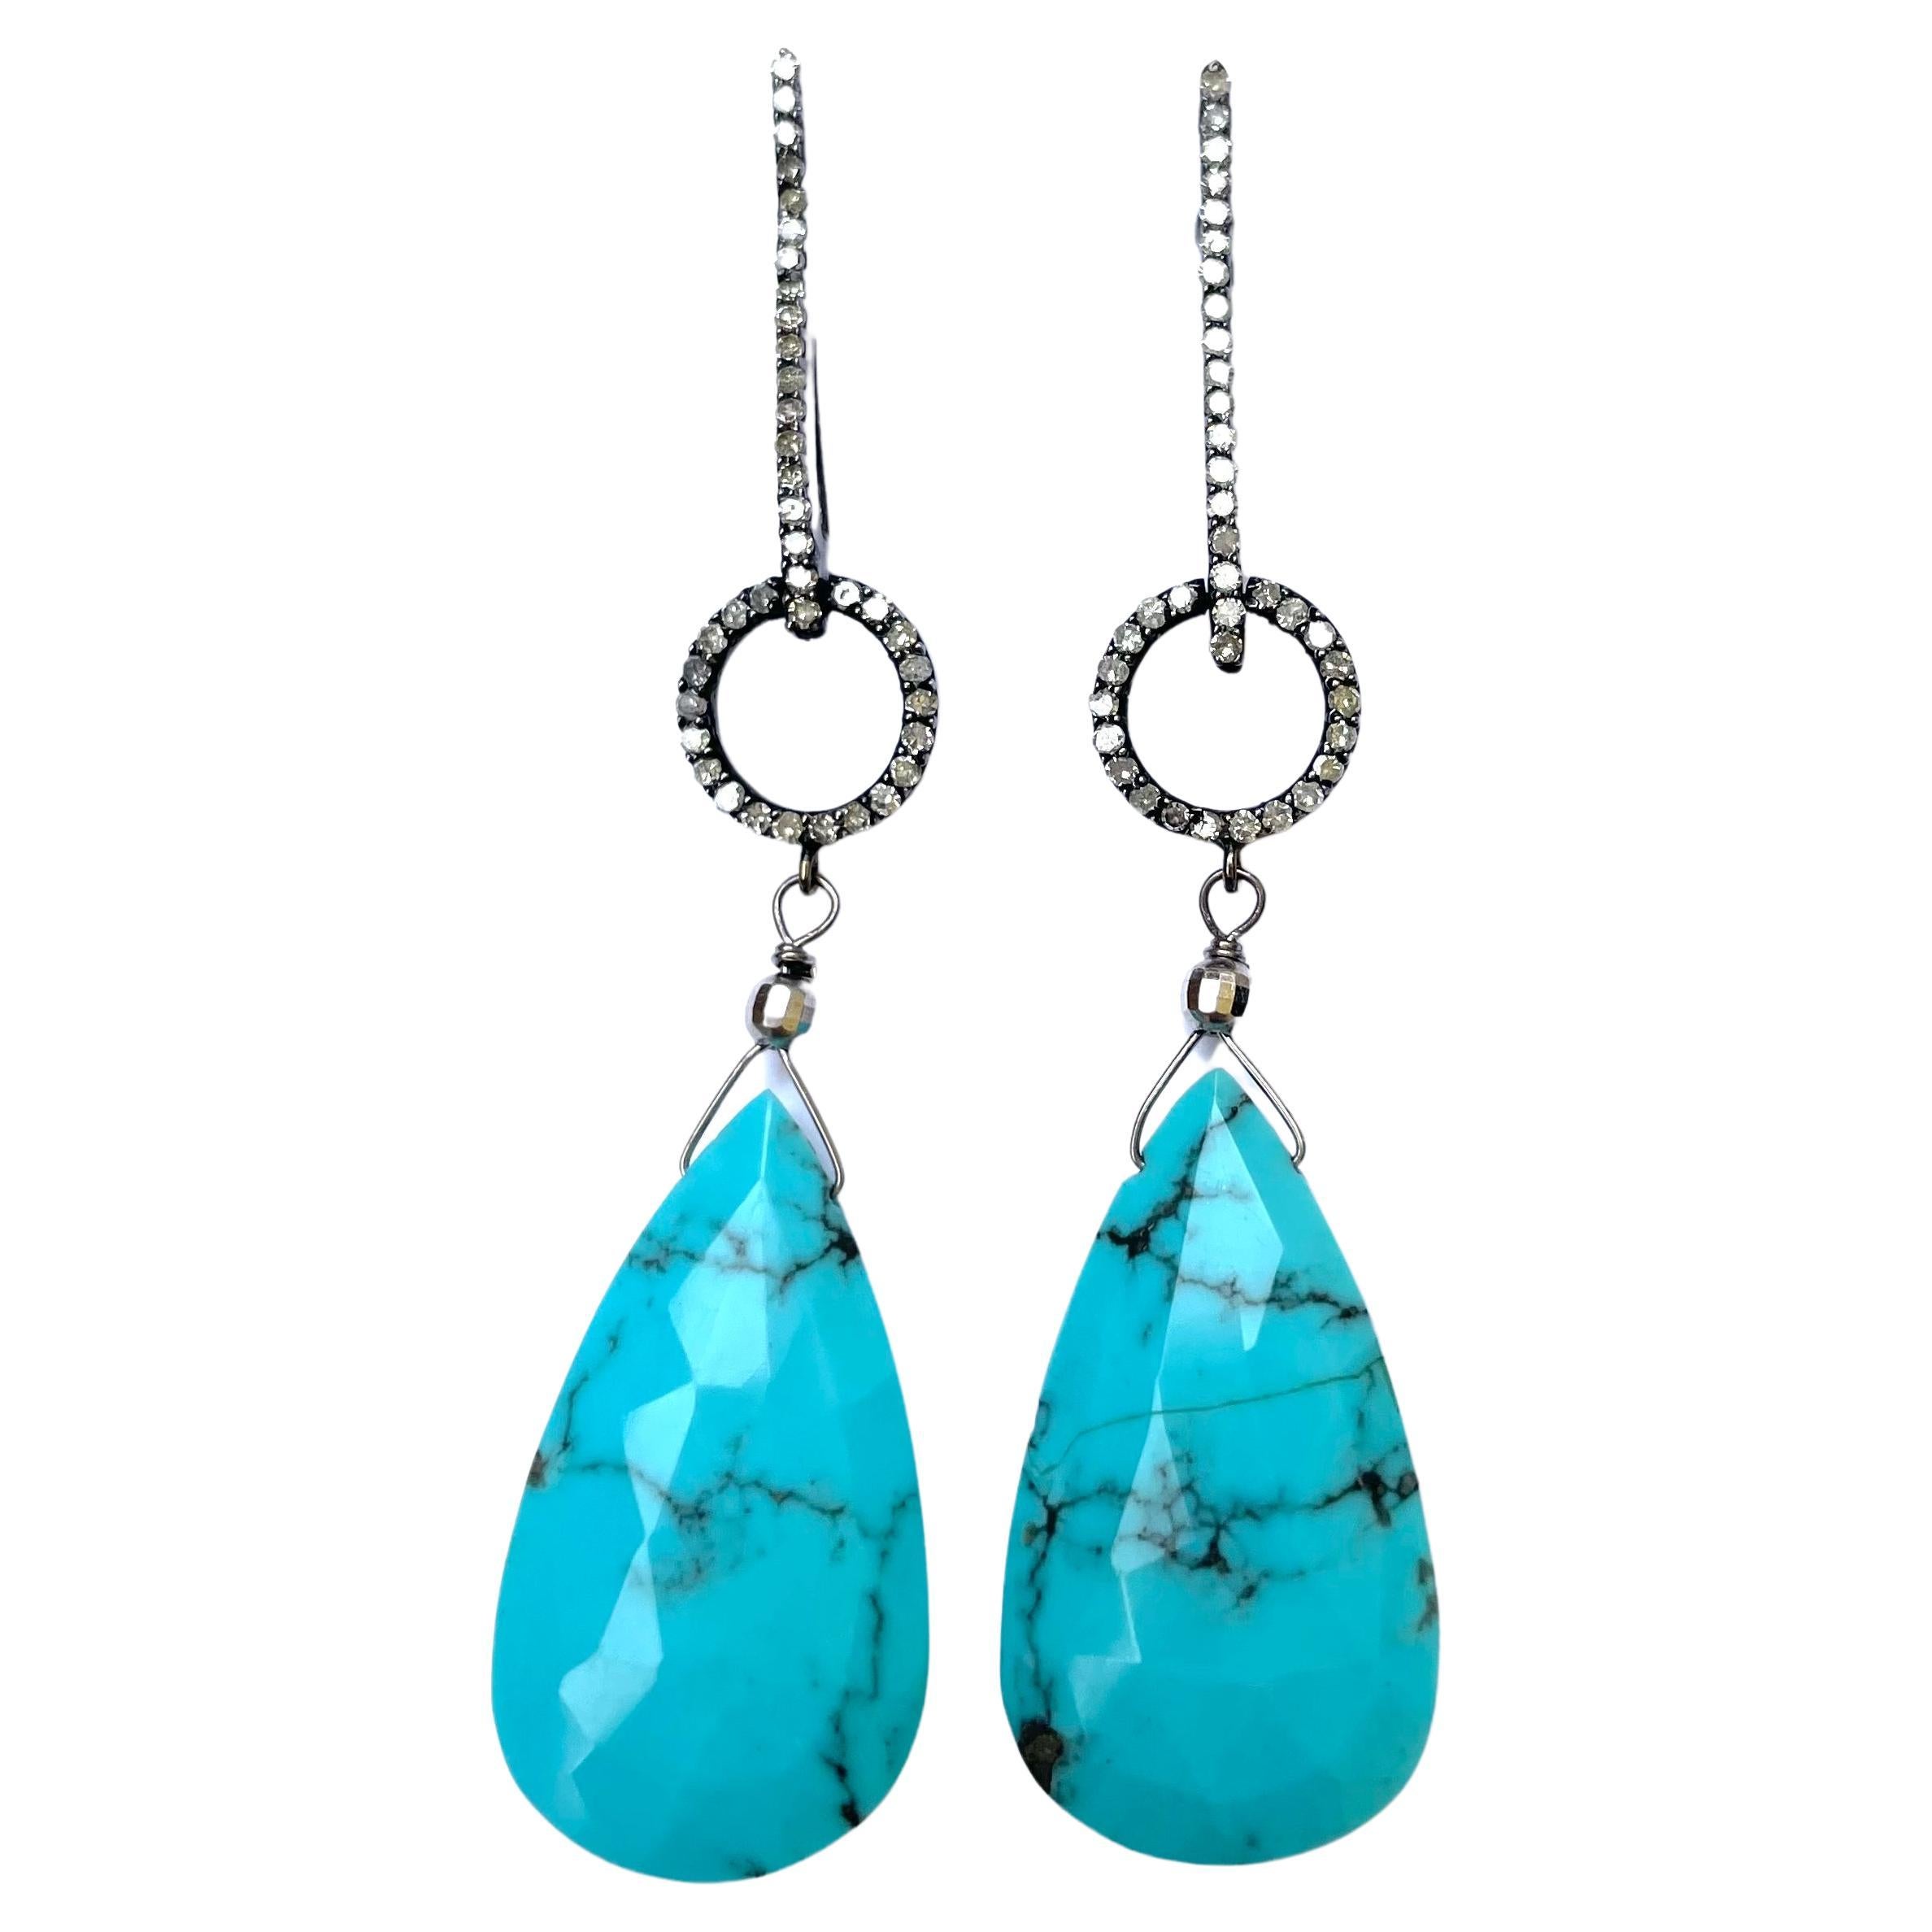 Sleeping Beauty Turquoise Earrings with Diamonds